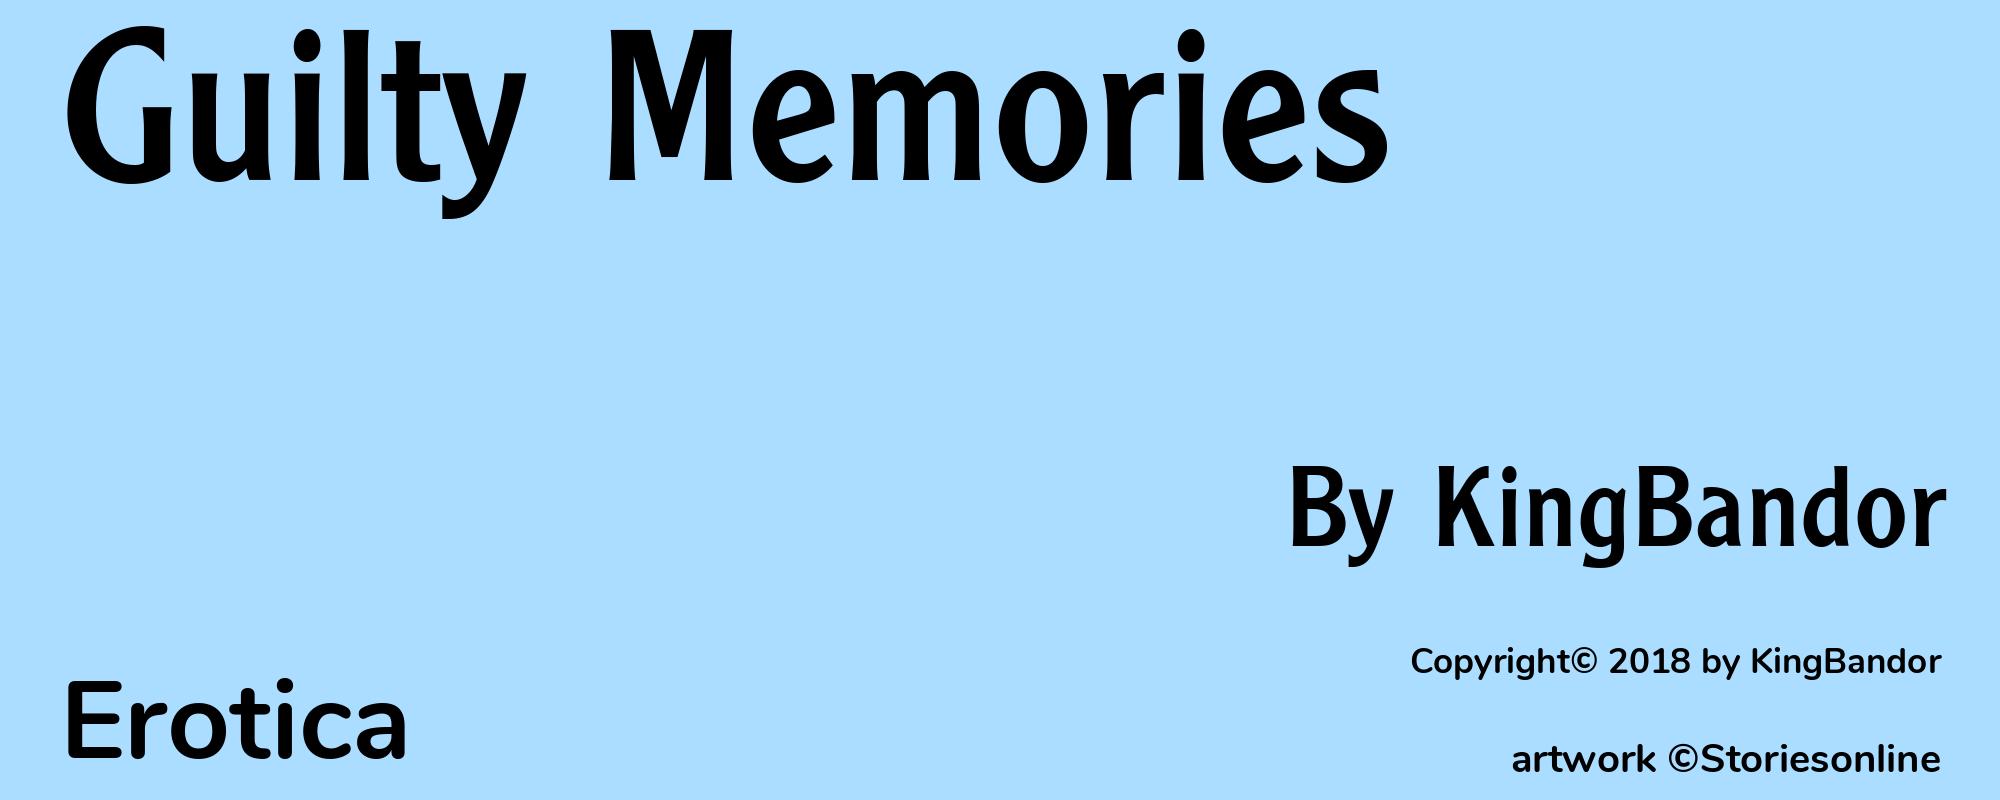 Guilty Memories - Cover